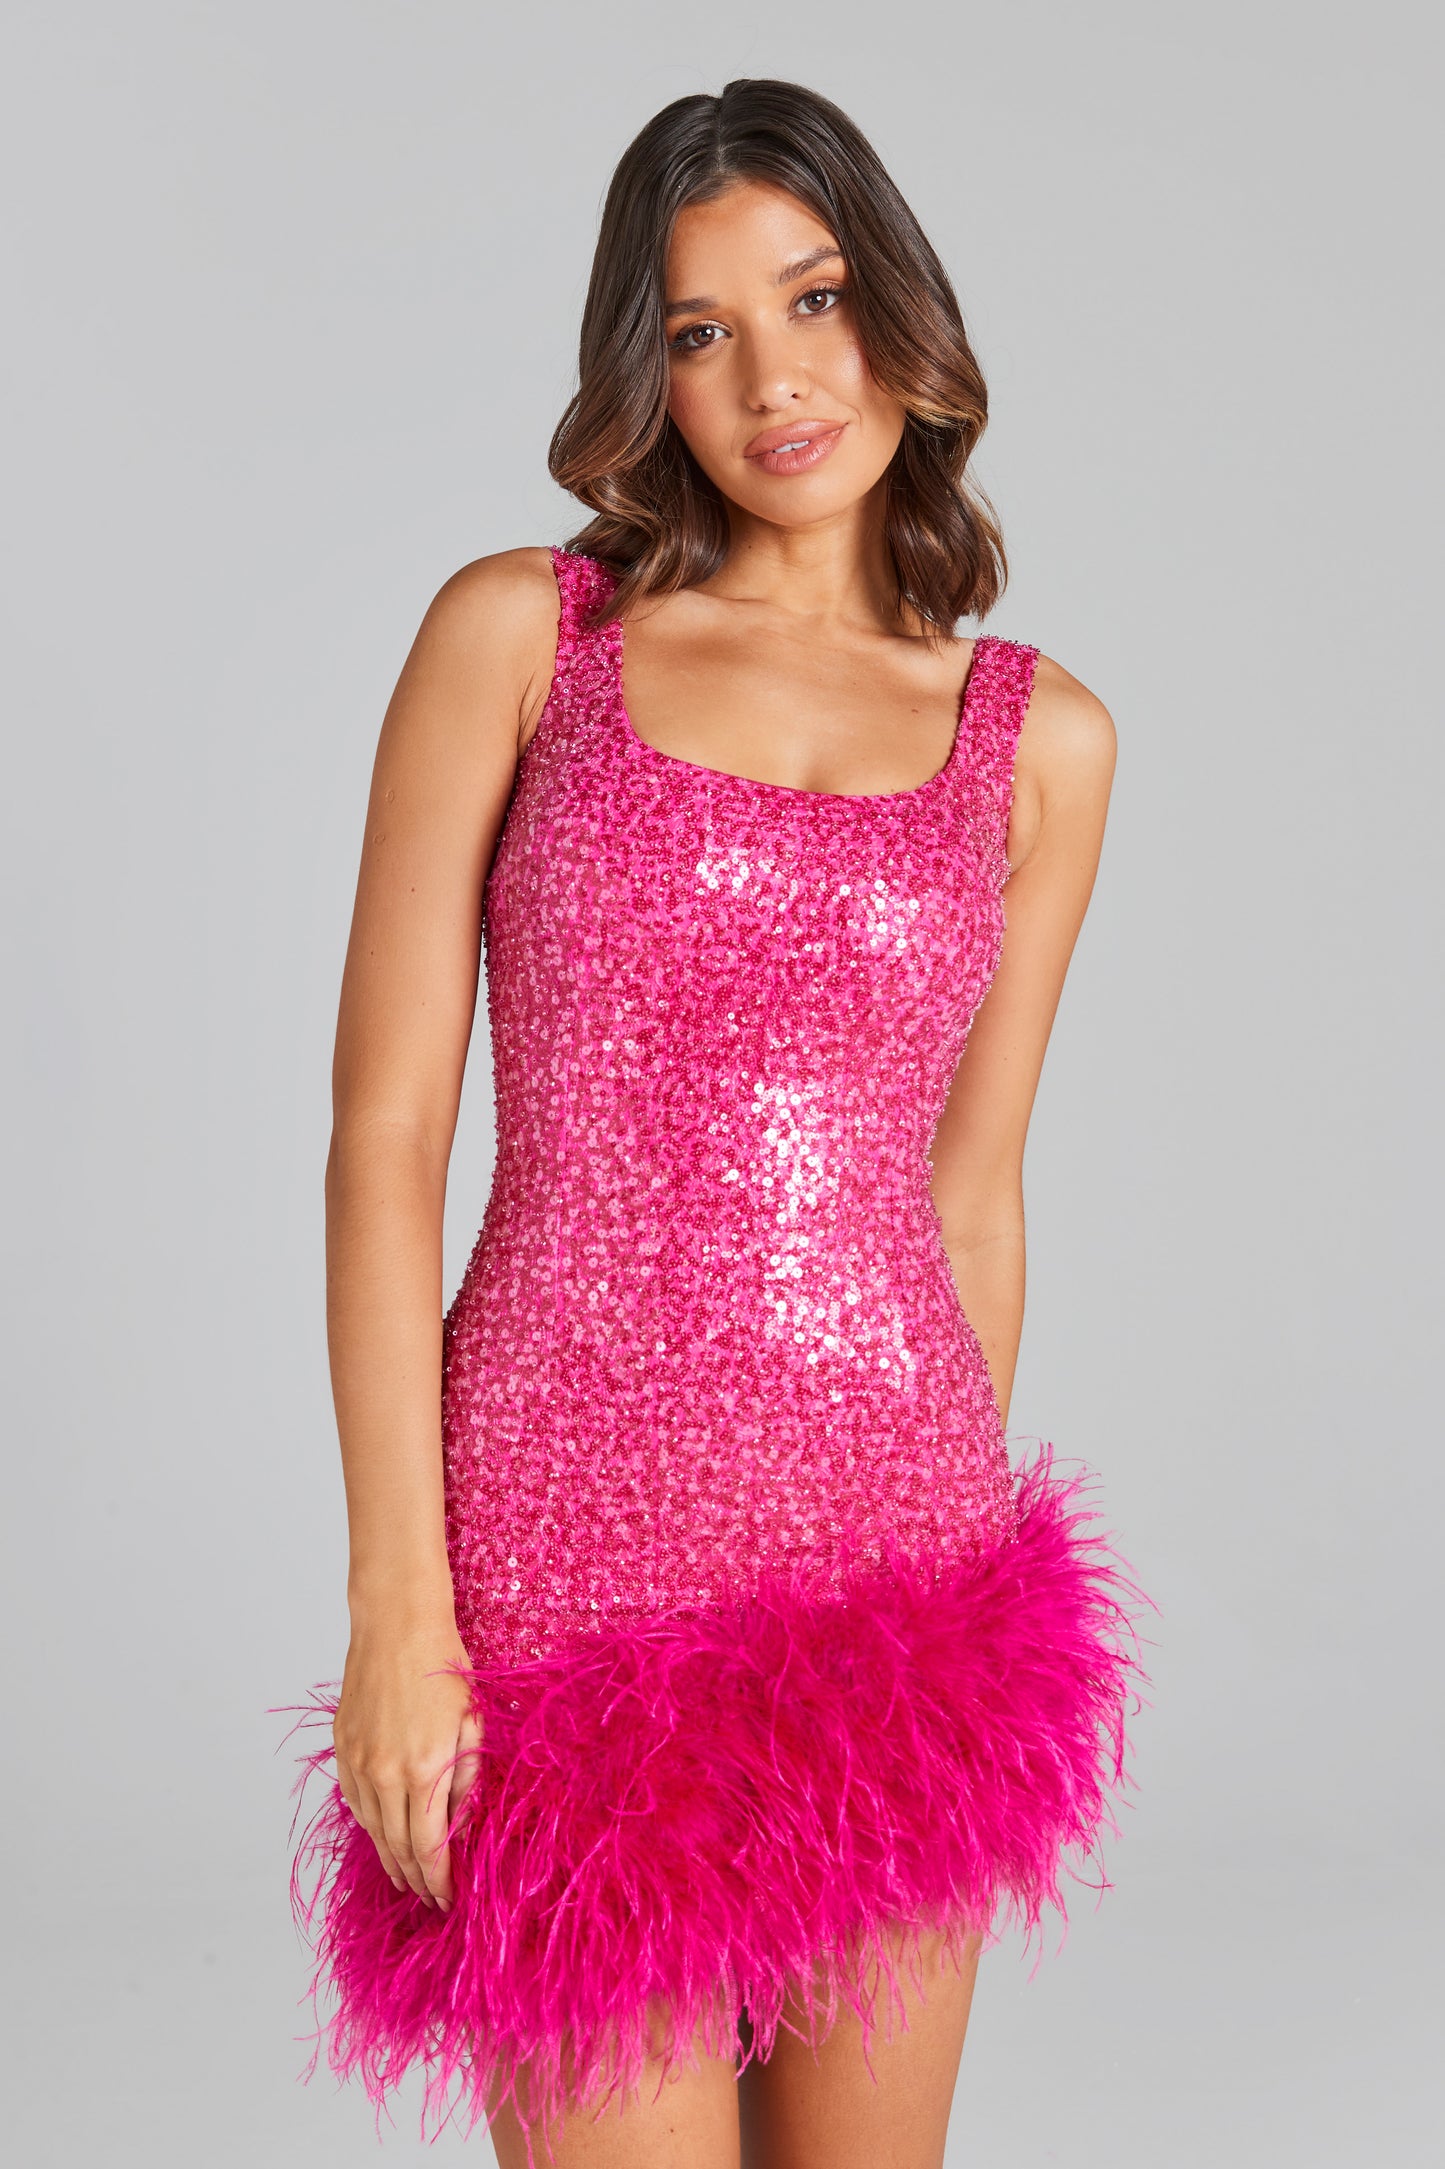 Evie Hot Pink Dress